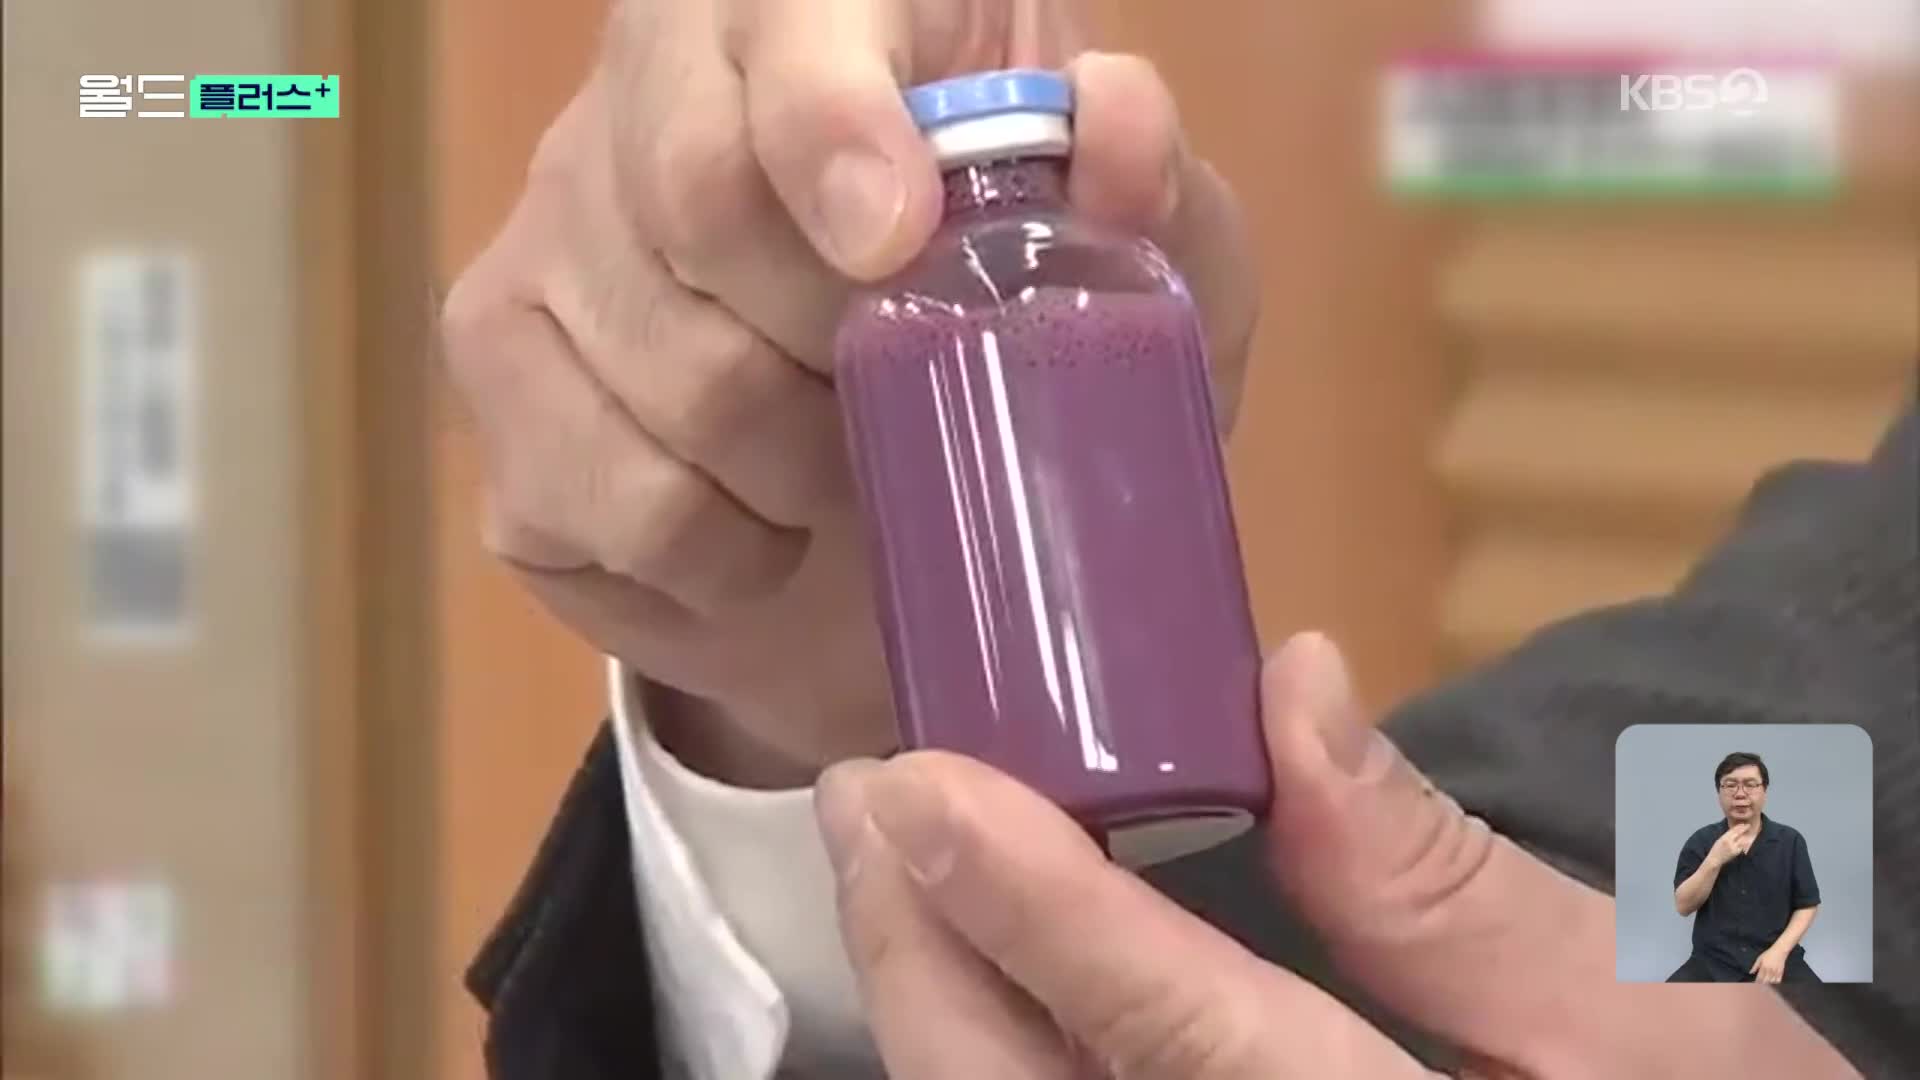 [월드 플러스] 모든 혈액형에 수혈 가능? 일본에서 개발한 ‘인공 혈액’